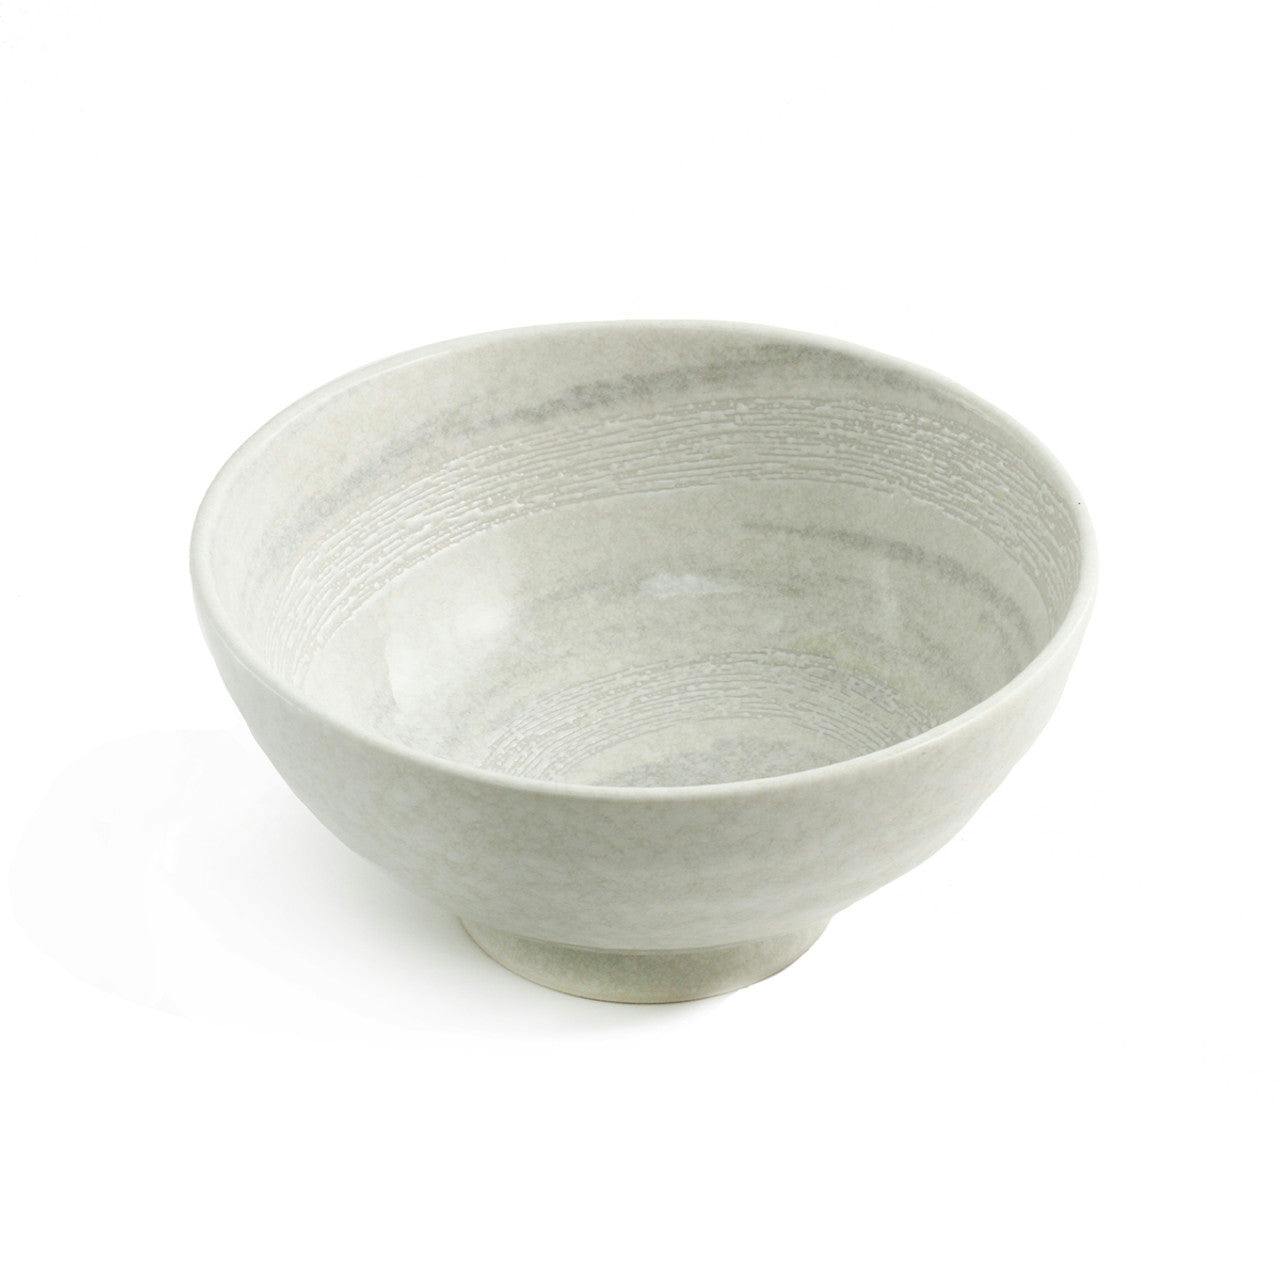 White & Gray Noodle Bowl 46 fl oz / 7.48" dia 白色 带浅灰色圈纹 面碗